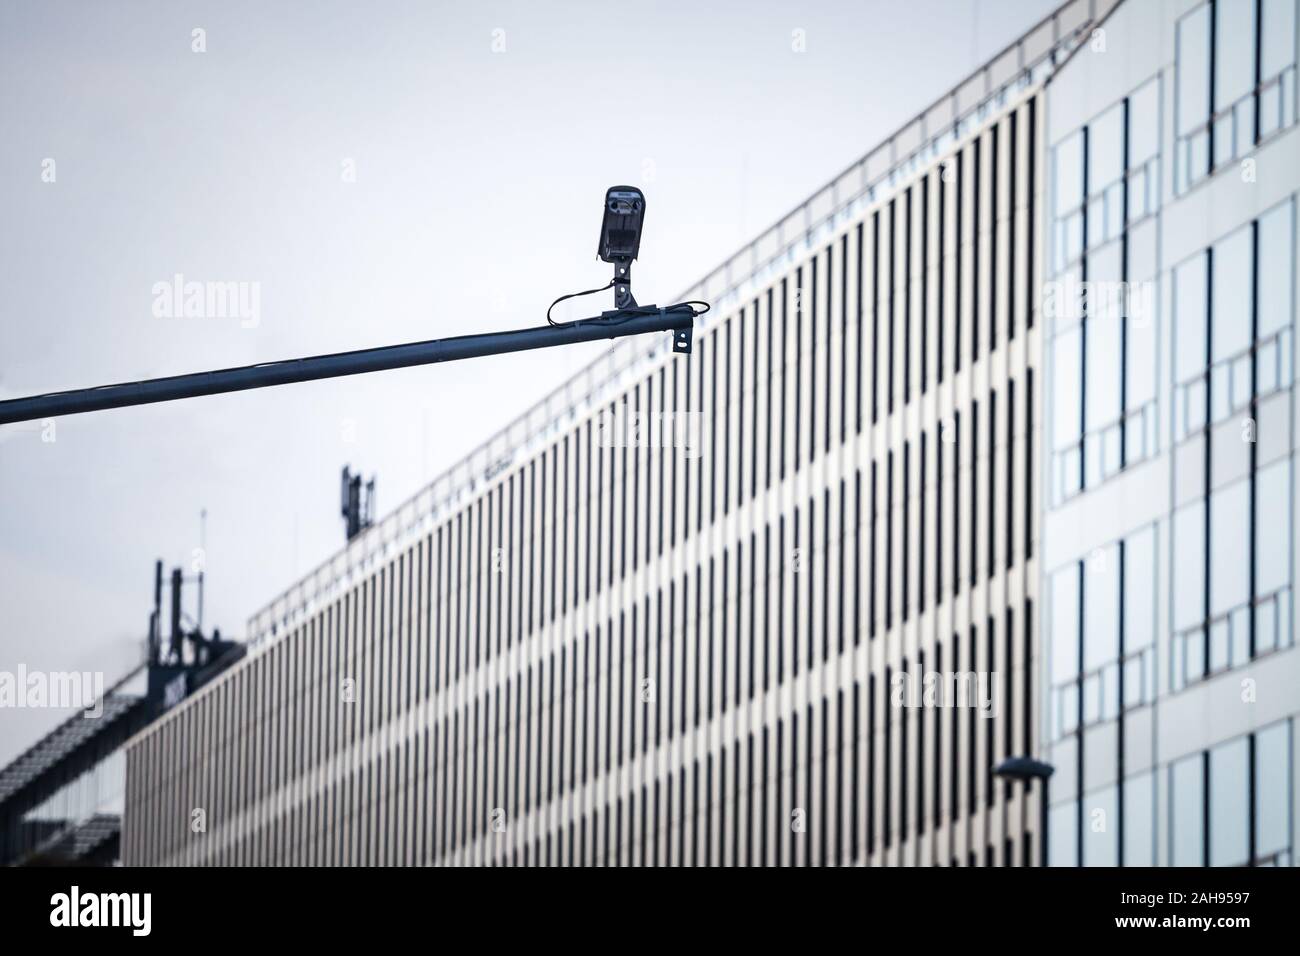 La sorveglianza TVCC e telecamere di sicurezza a guardare e proteggere la parte esterna di un vetro moderno edificio aziendale. immagine di una telecamera TVCC, vecchio design, s Foto Stock